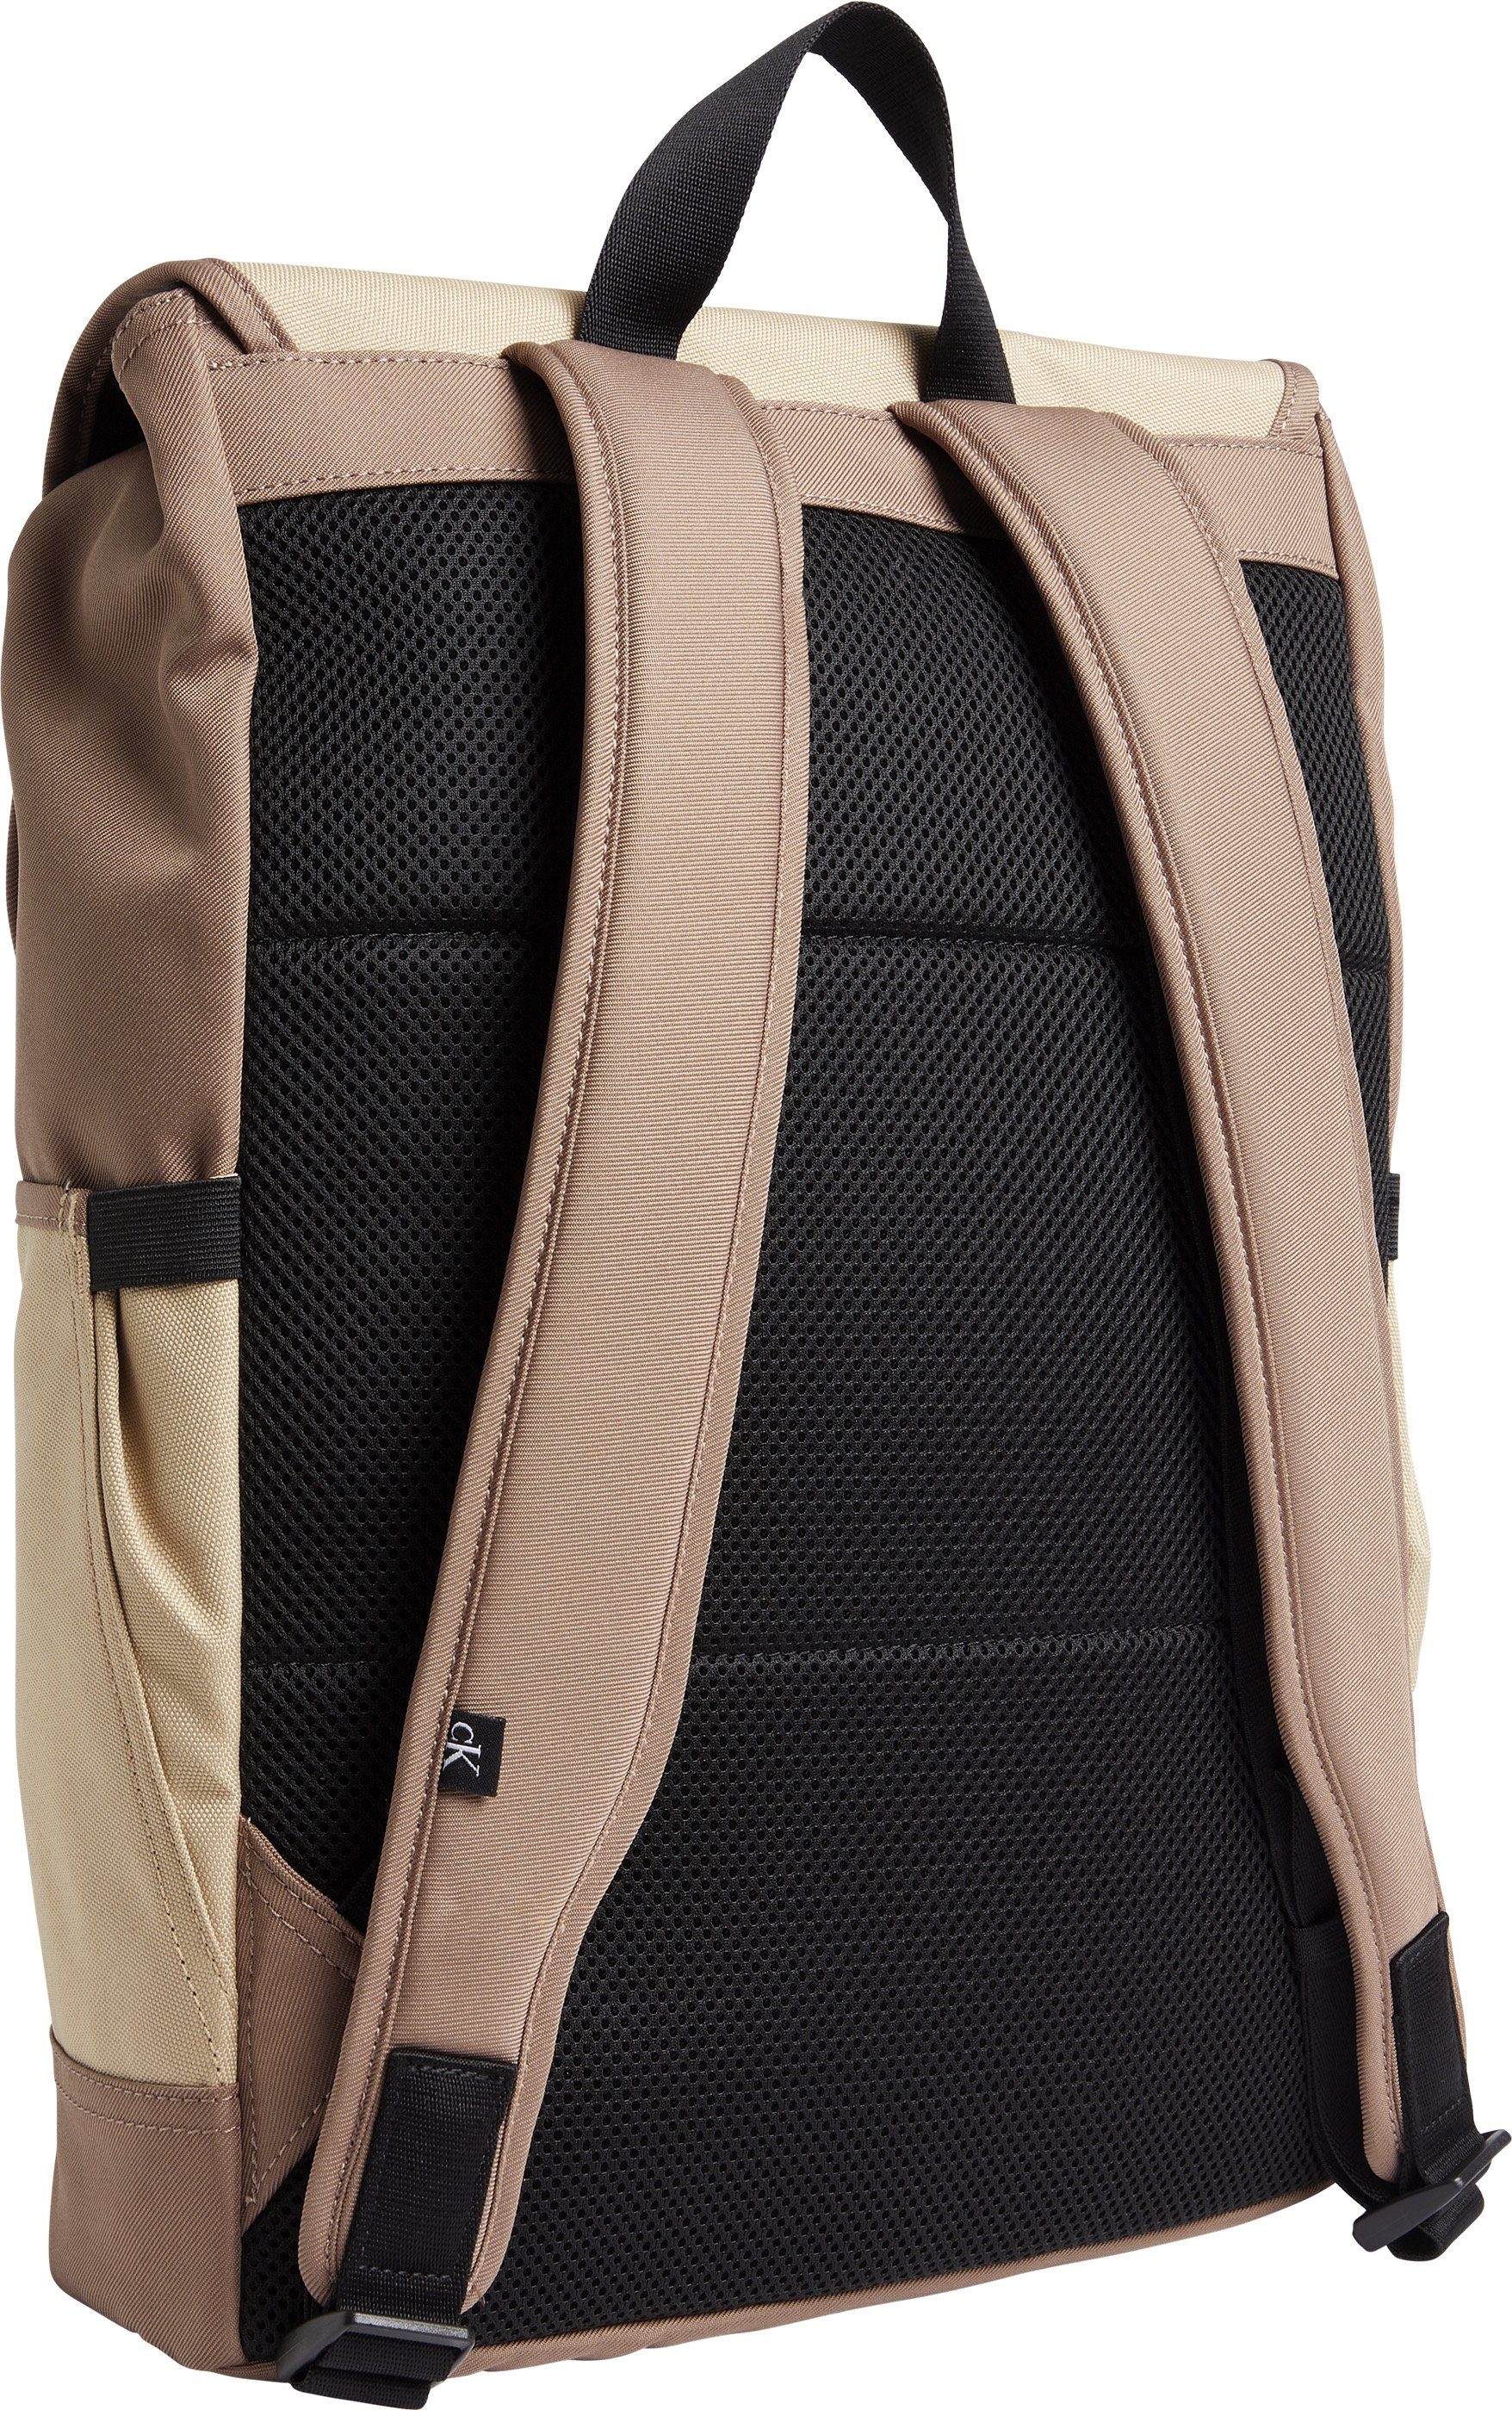 Calvin Klein Jeans Cityrucksack mit gepolstertem CB, Travertine BP43 Rücken Block FLAP ESSENTIALS SPORT